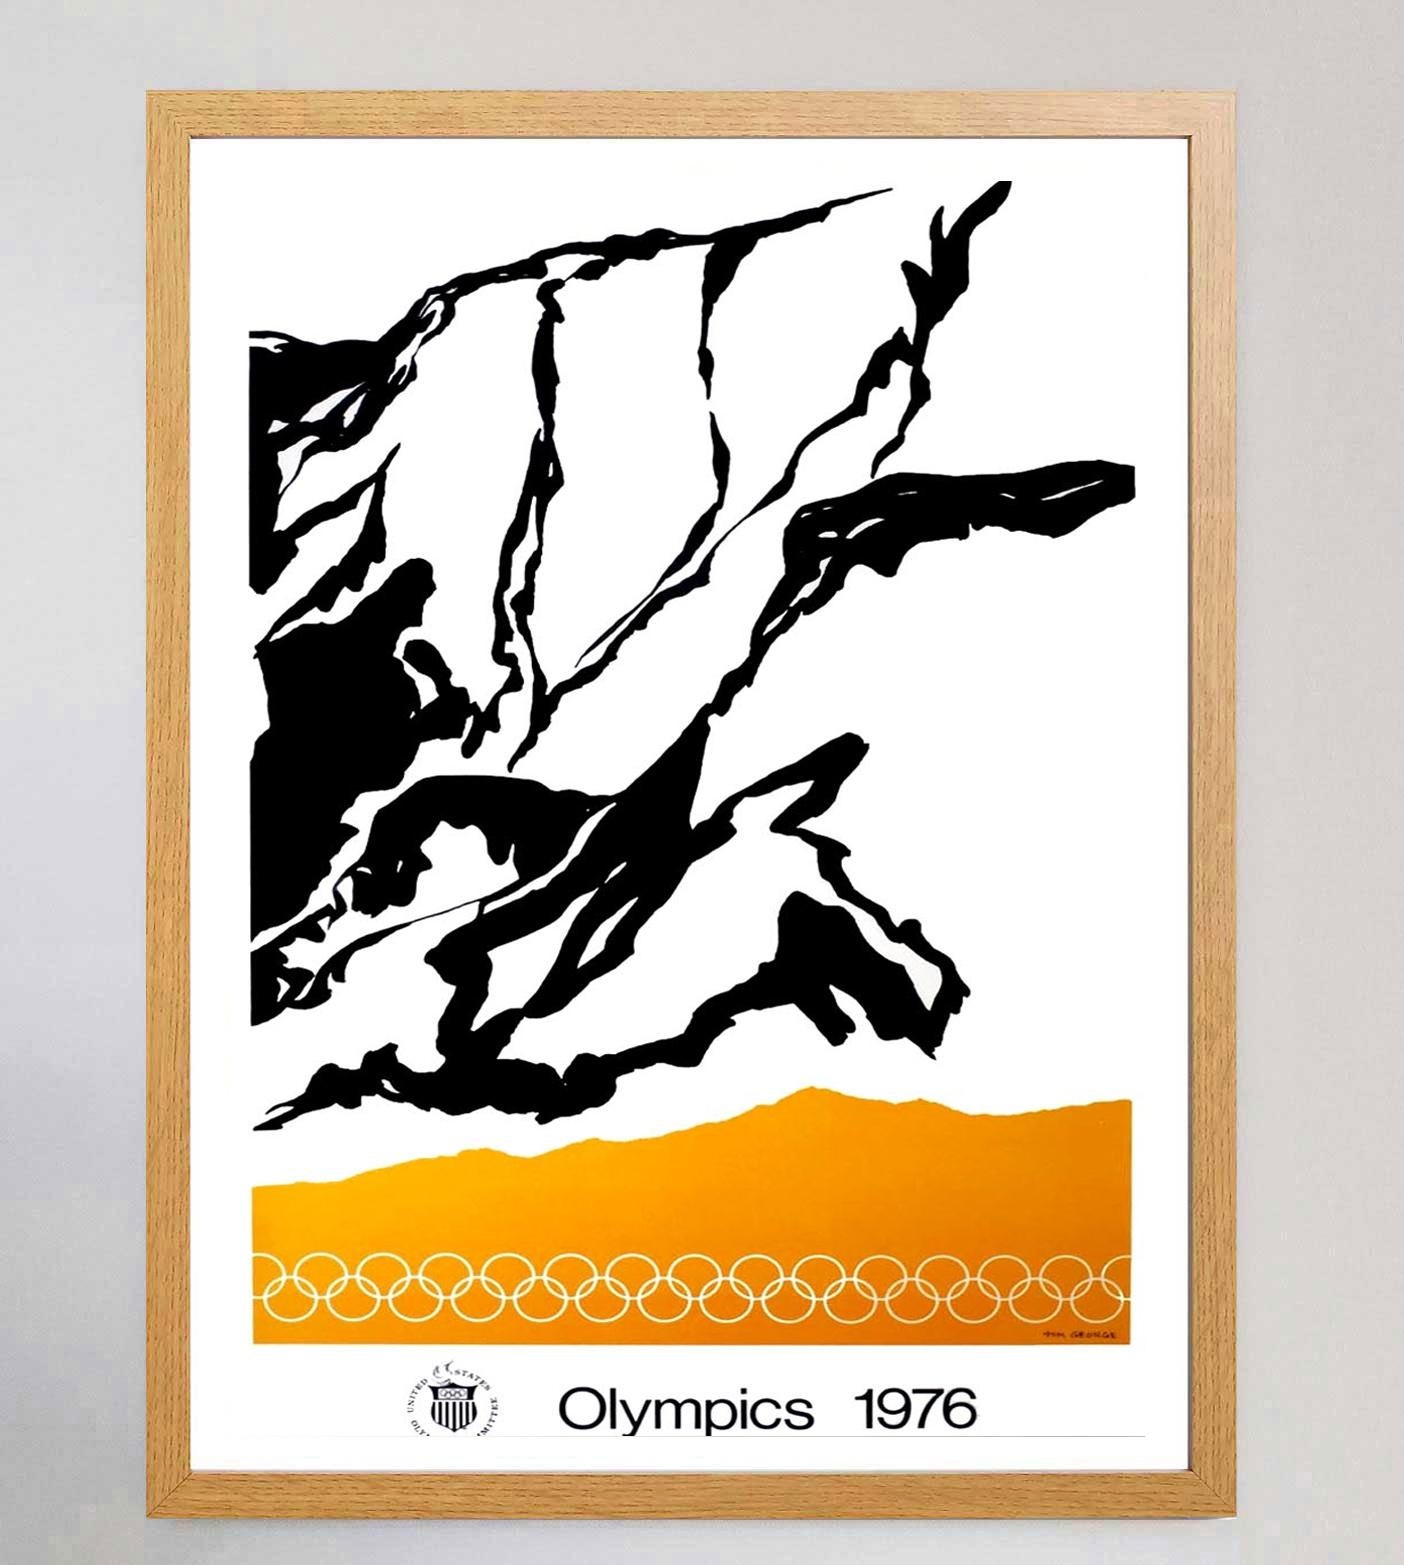 L'artista americano Tom George è stato uno dei tanti artisti incaricati di creare poster artistici per promuovere le Olimpiadi estive di Montreal del 1976. I giochi, i primi e unici Giochi Estivi a svolgersi in Canada, furono vinti dall'Unione